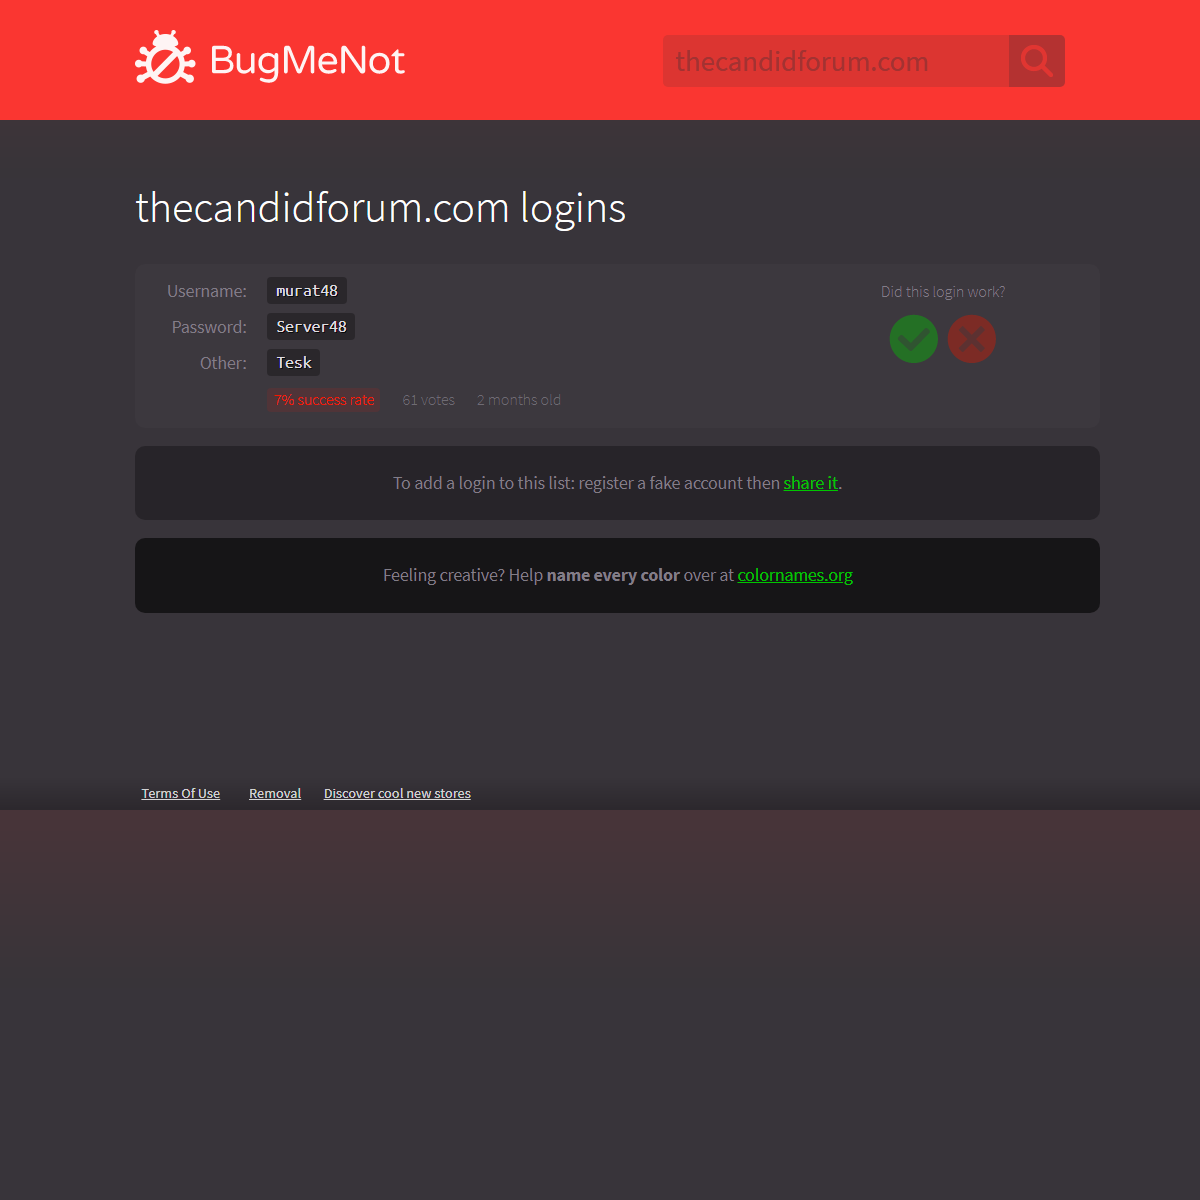 A complete backup of http://bugmenot.com/view/thecandidforum.com